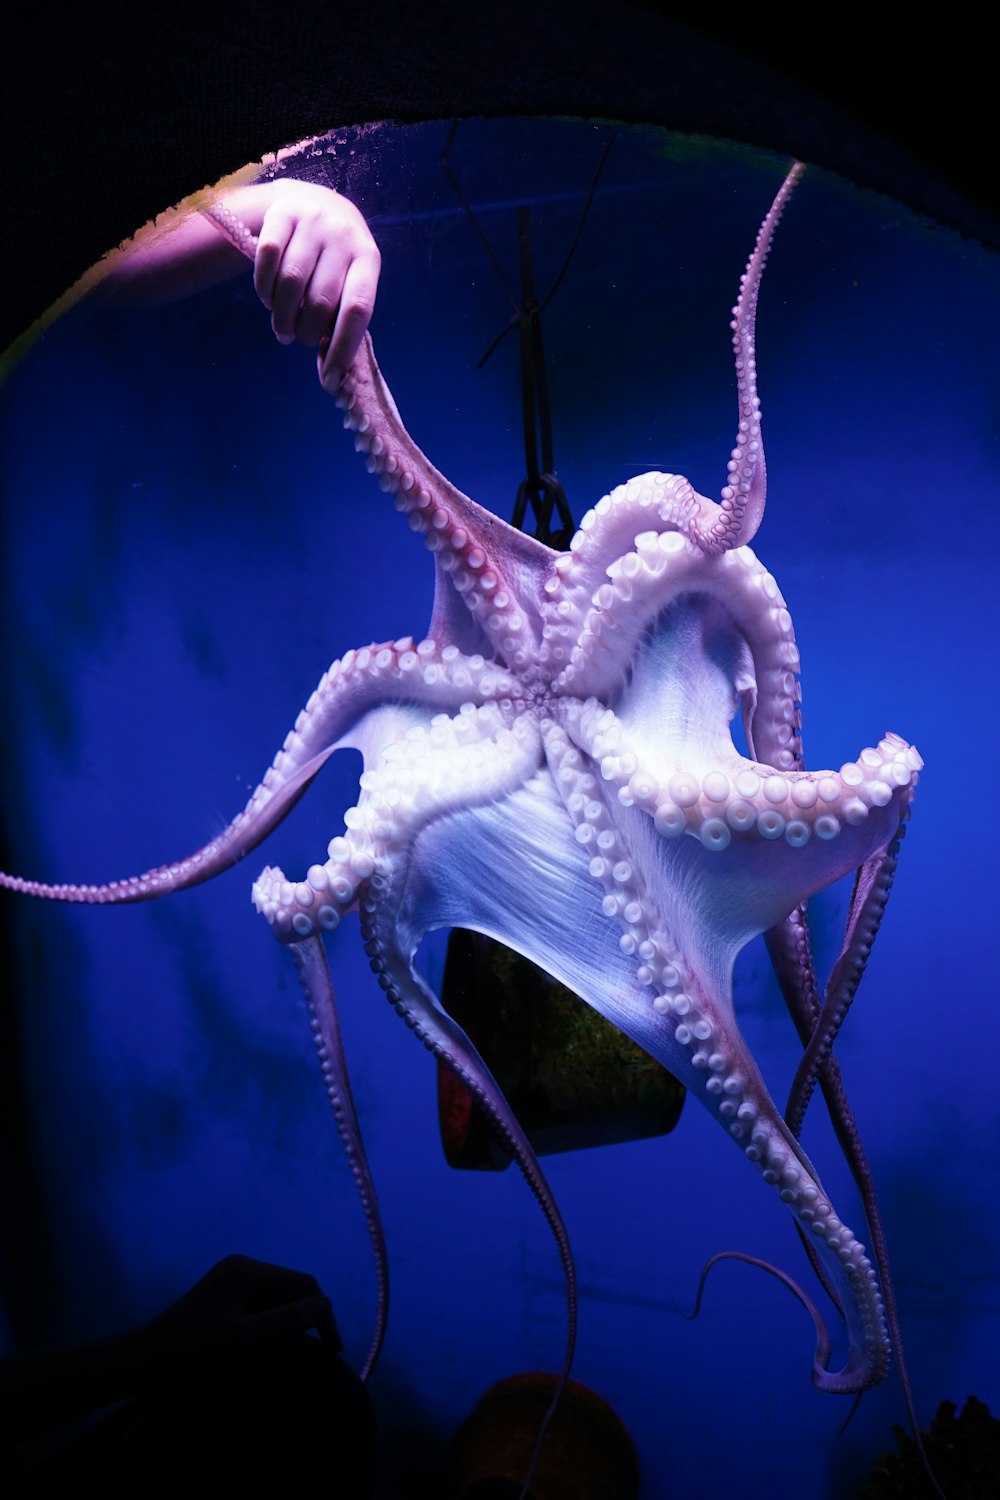 Ein Oktopus hängt kopfüber in einem Becken